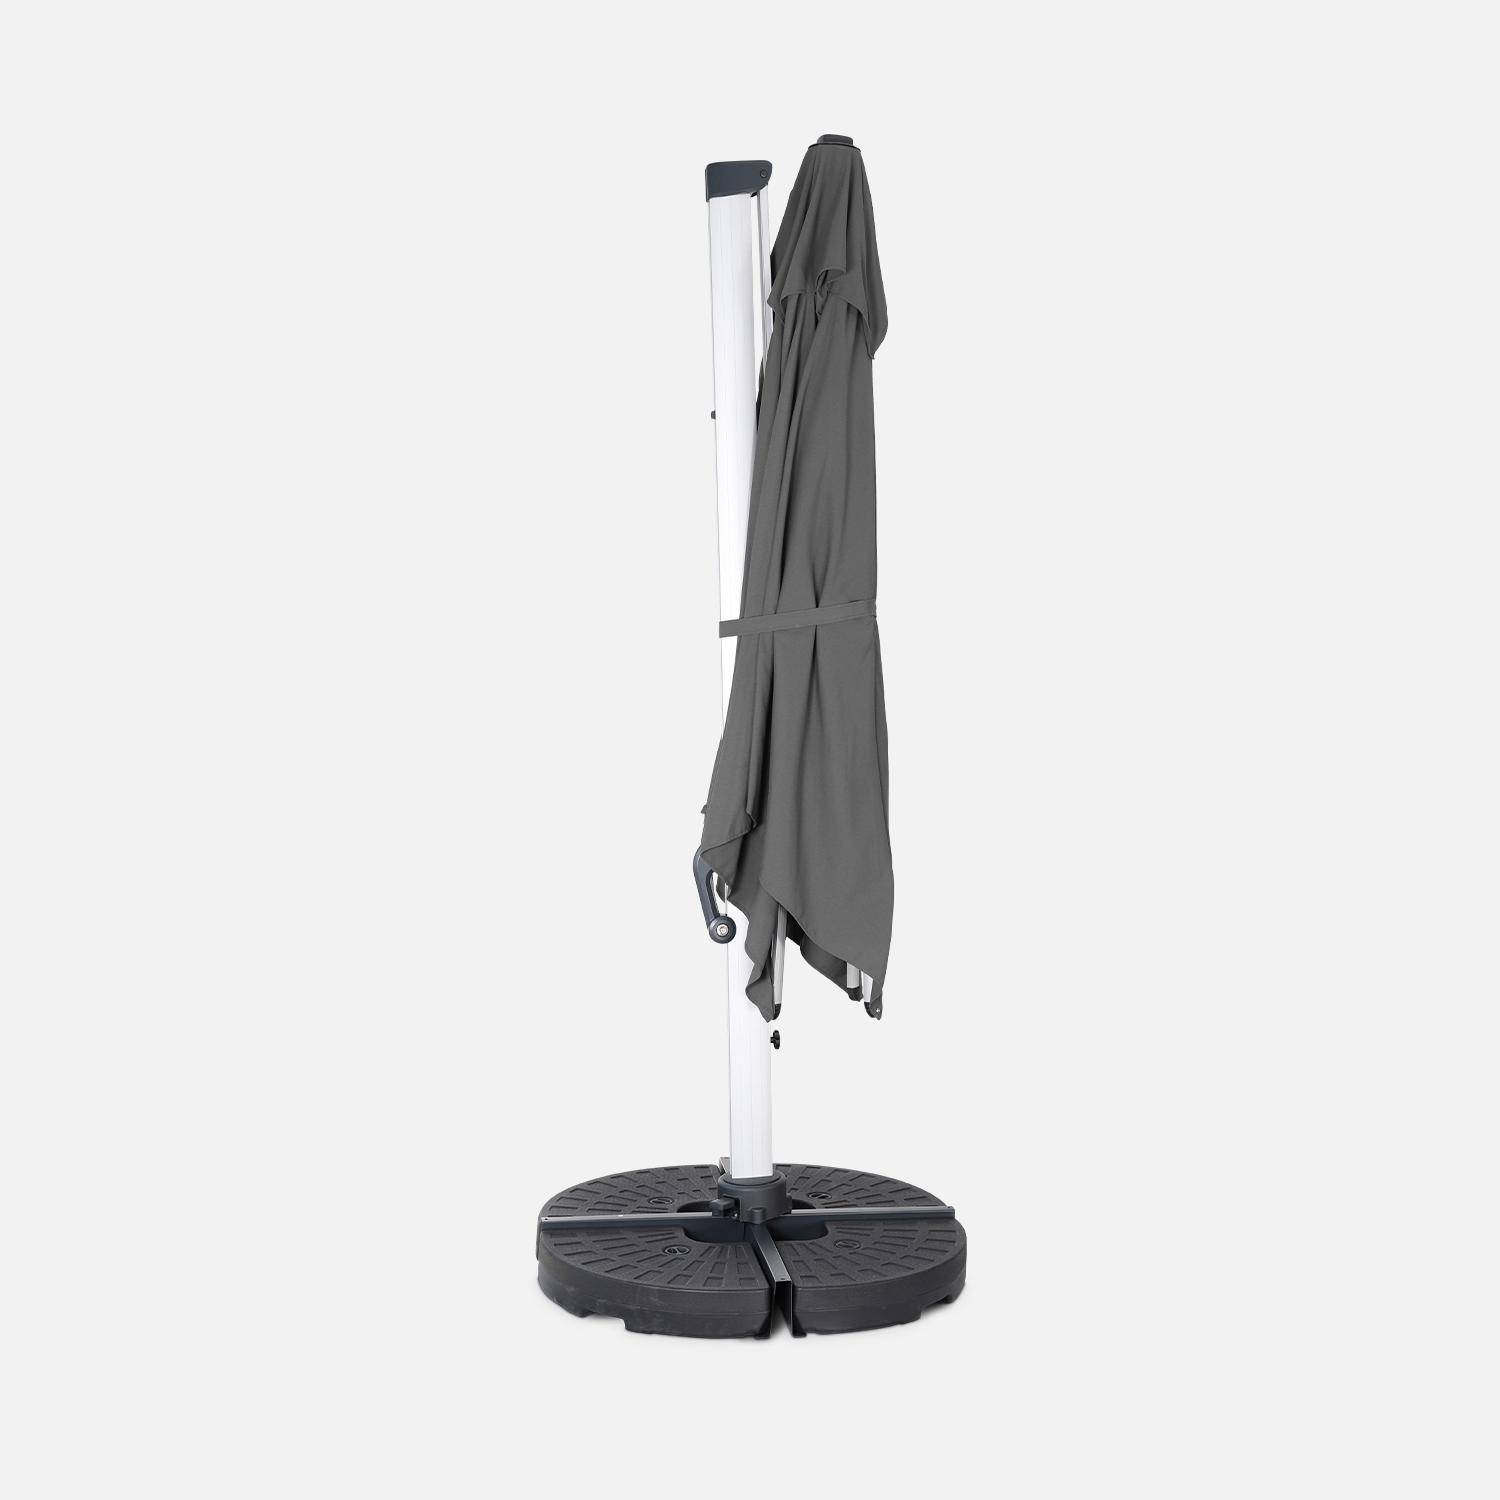 Parasol déporté haut de gamme 3x3m gris, toile en polyester teintée dans la masse, structure aluminium anodisé, housse incluse ,sweeek,Photo4